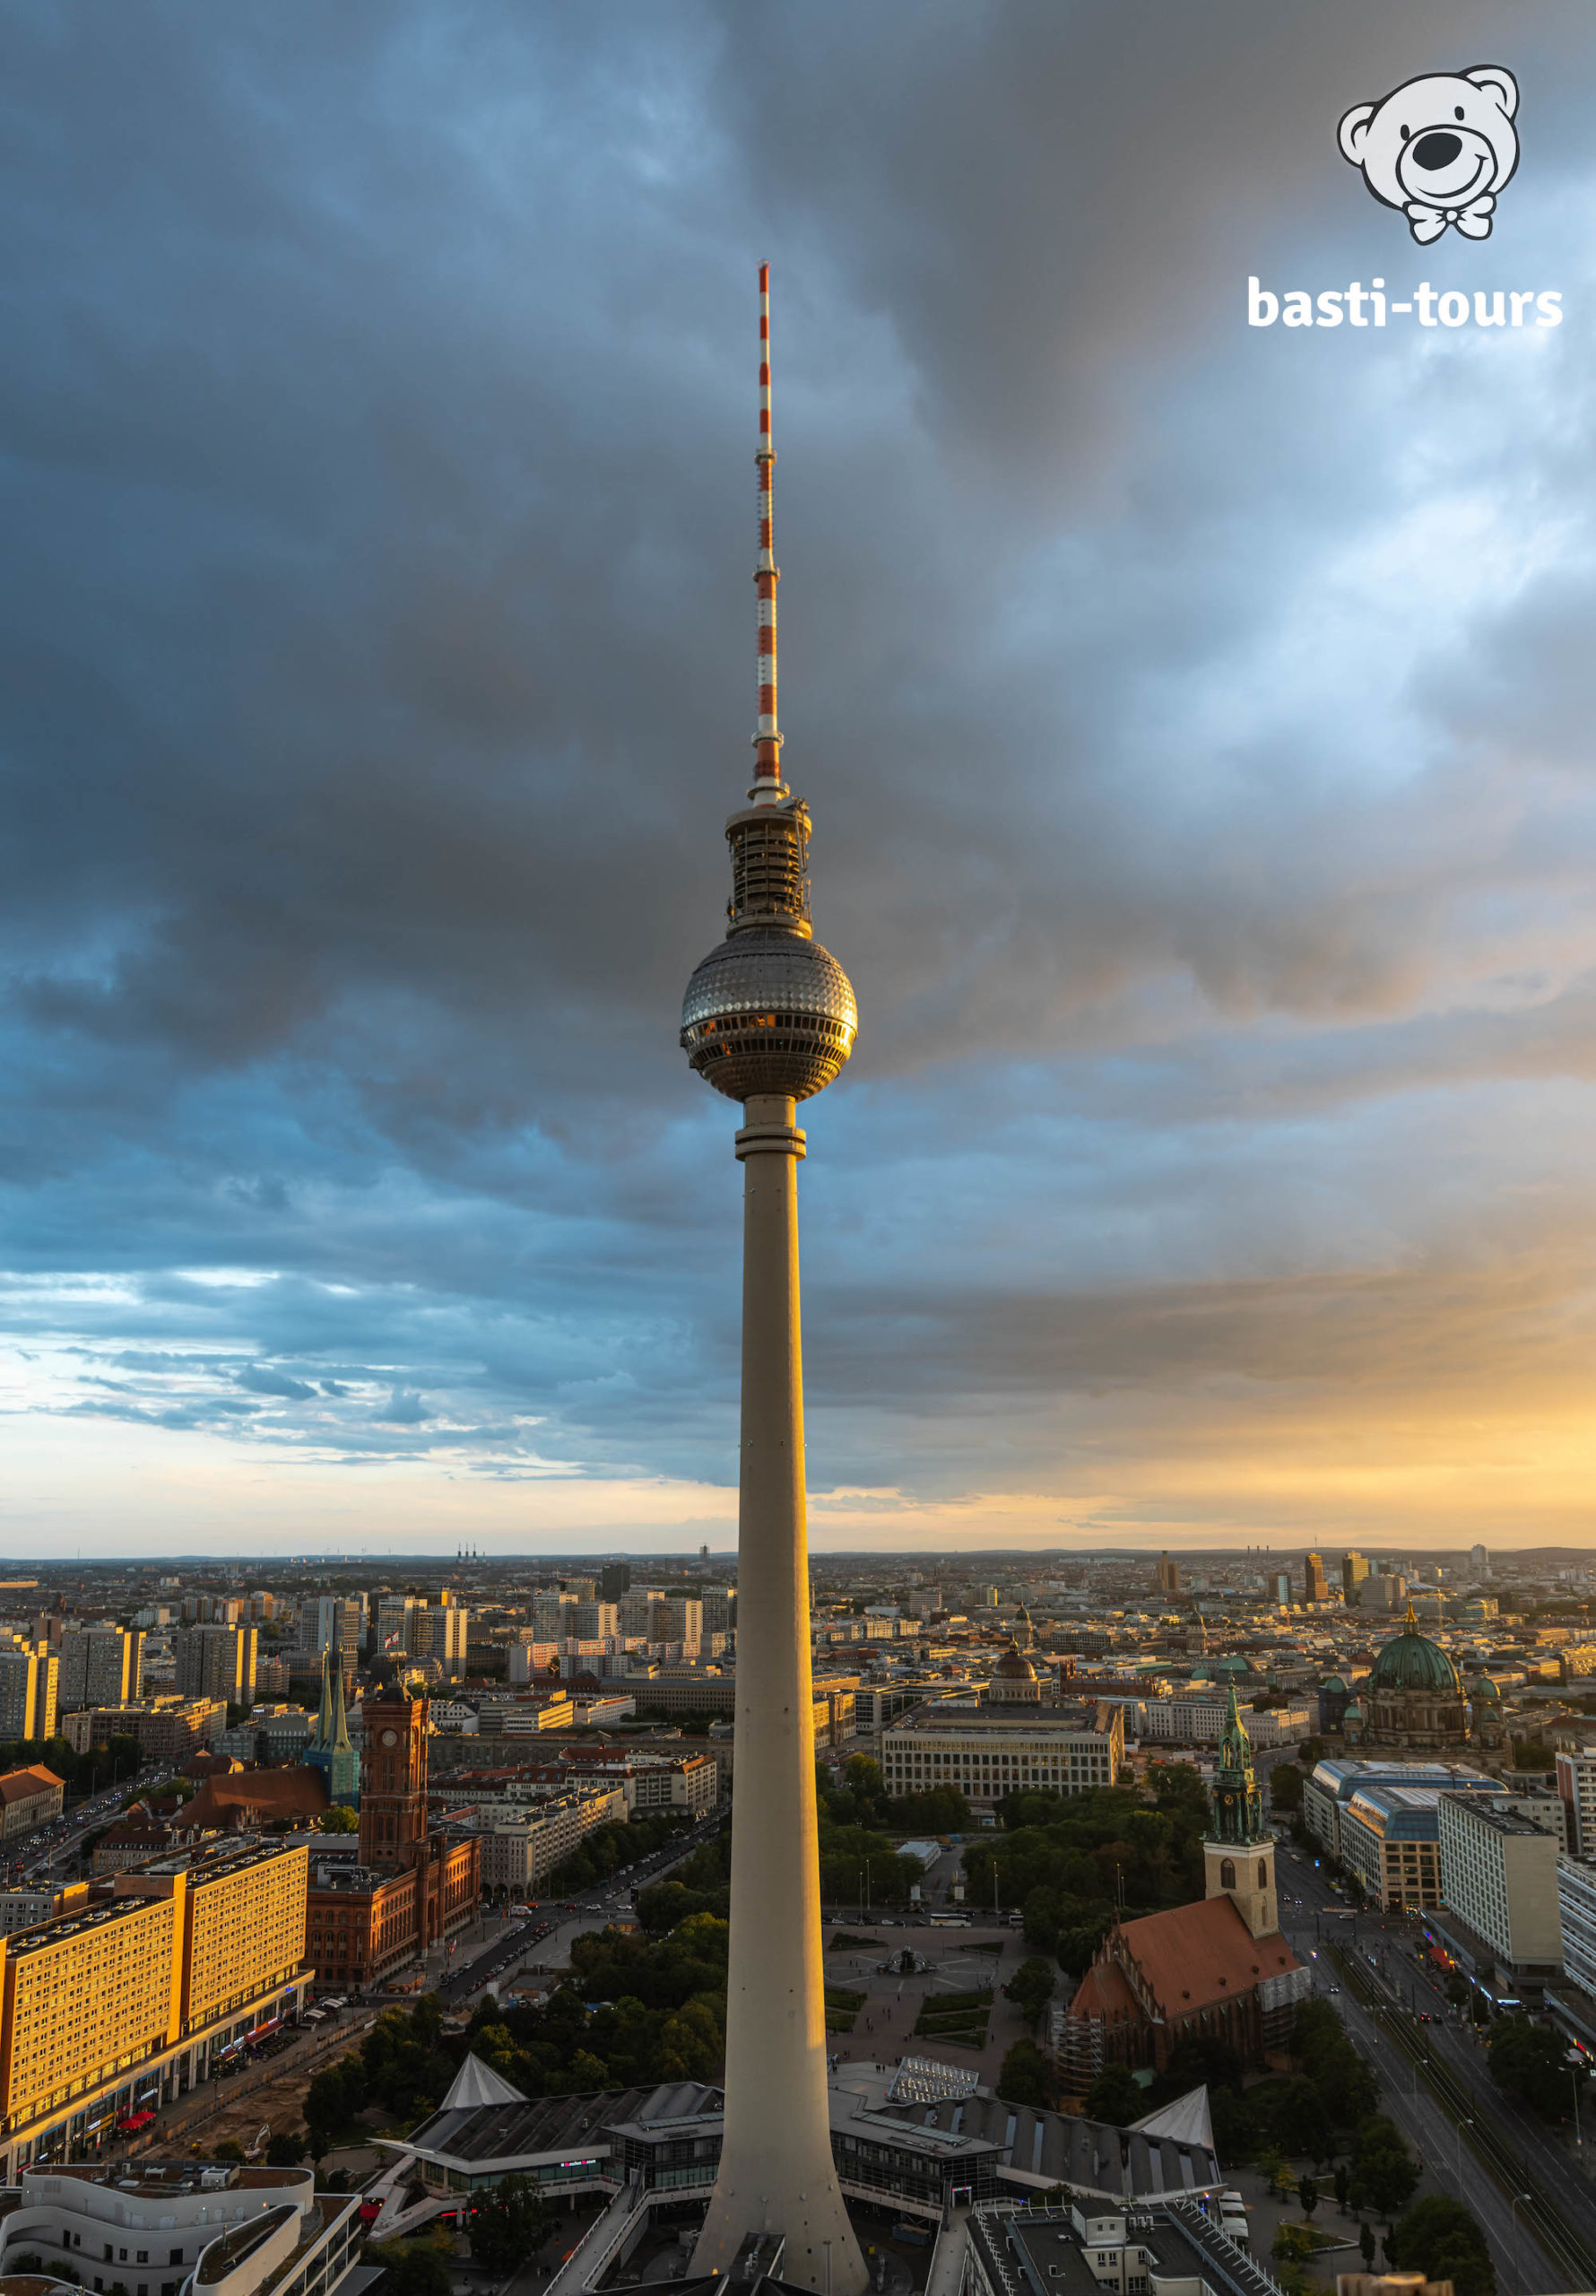 Der Fernsehturm in Deutschlands Hauptstadt Berlin - Aussichtspunkt Sightseeing Berlin bei Sonnenuntergang